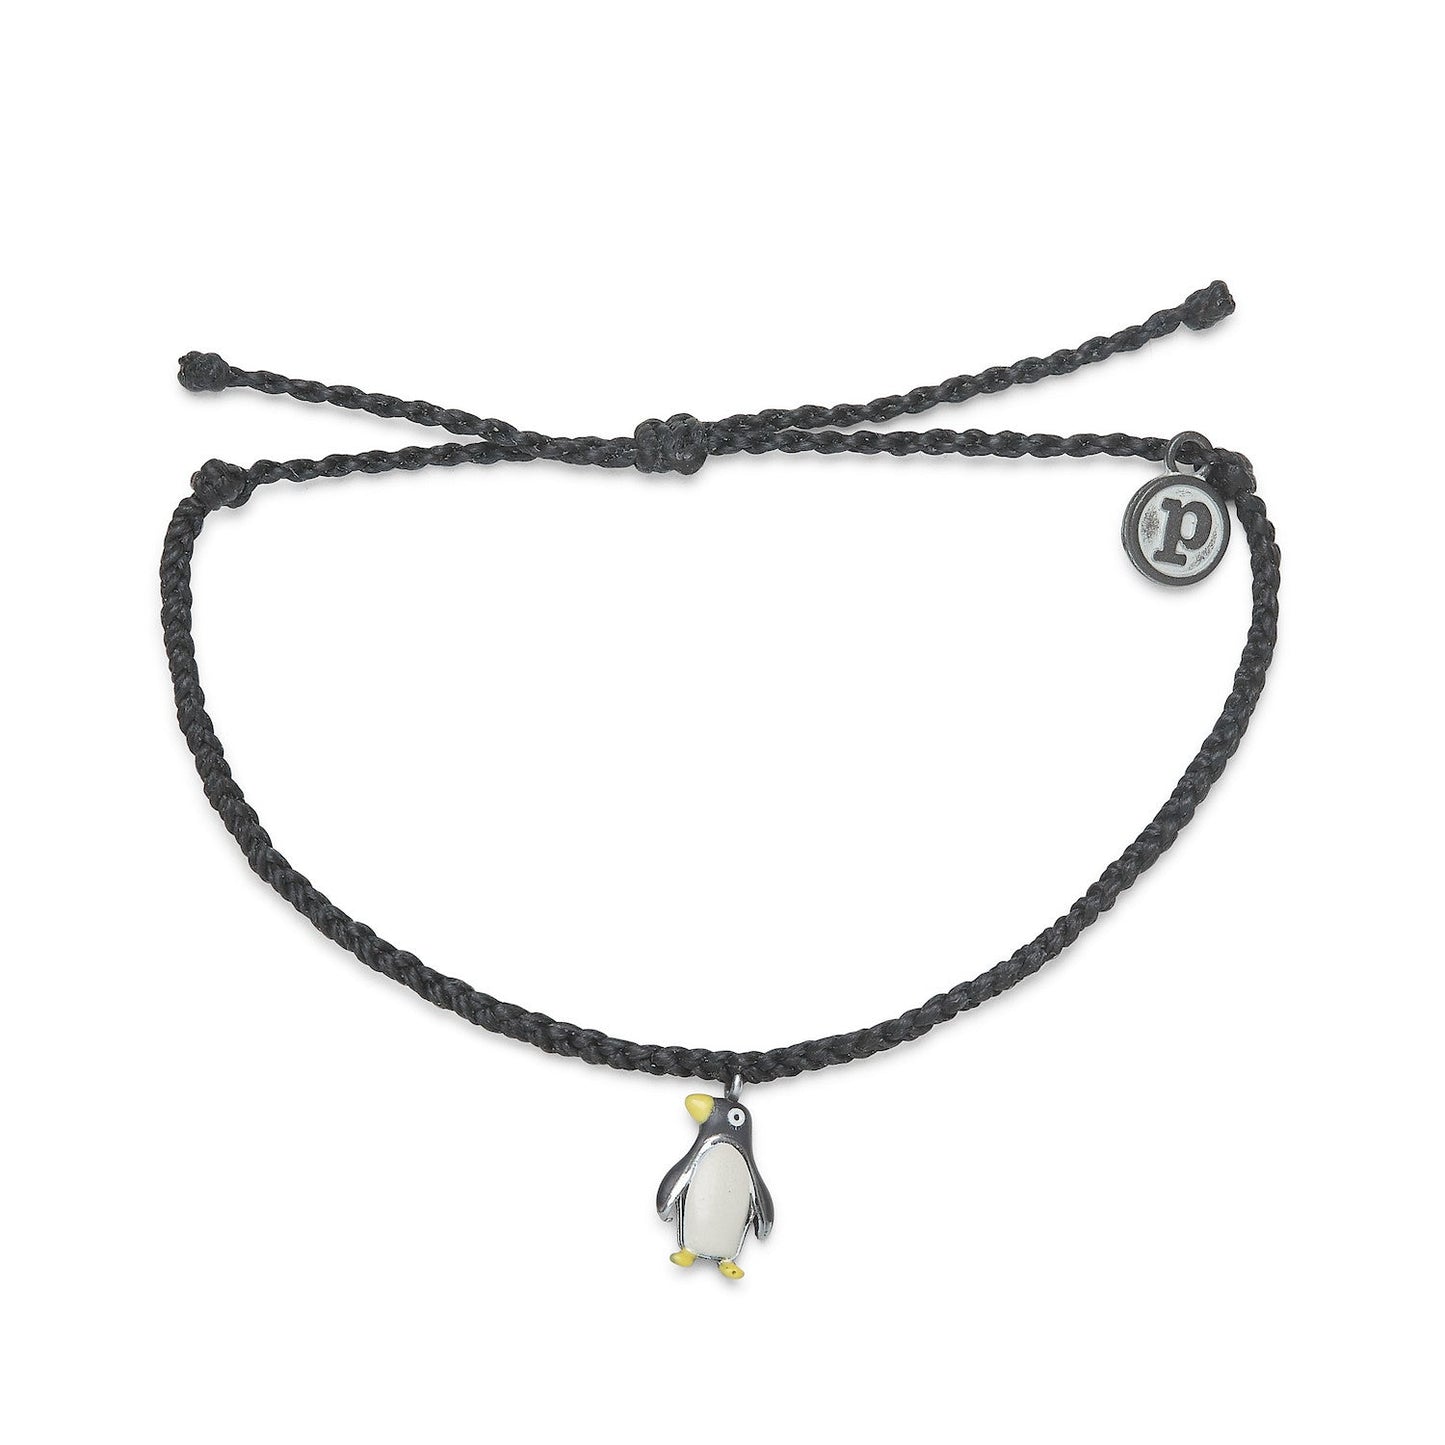 Charity Charm Bracelet - Penguin - Silver - Black